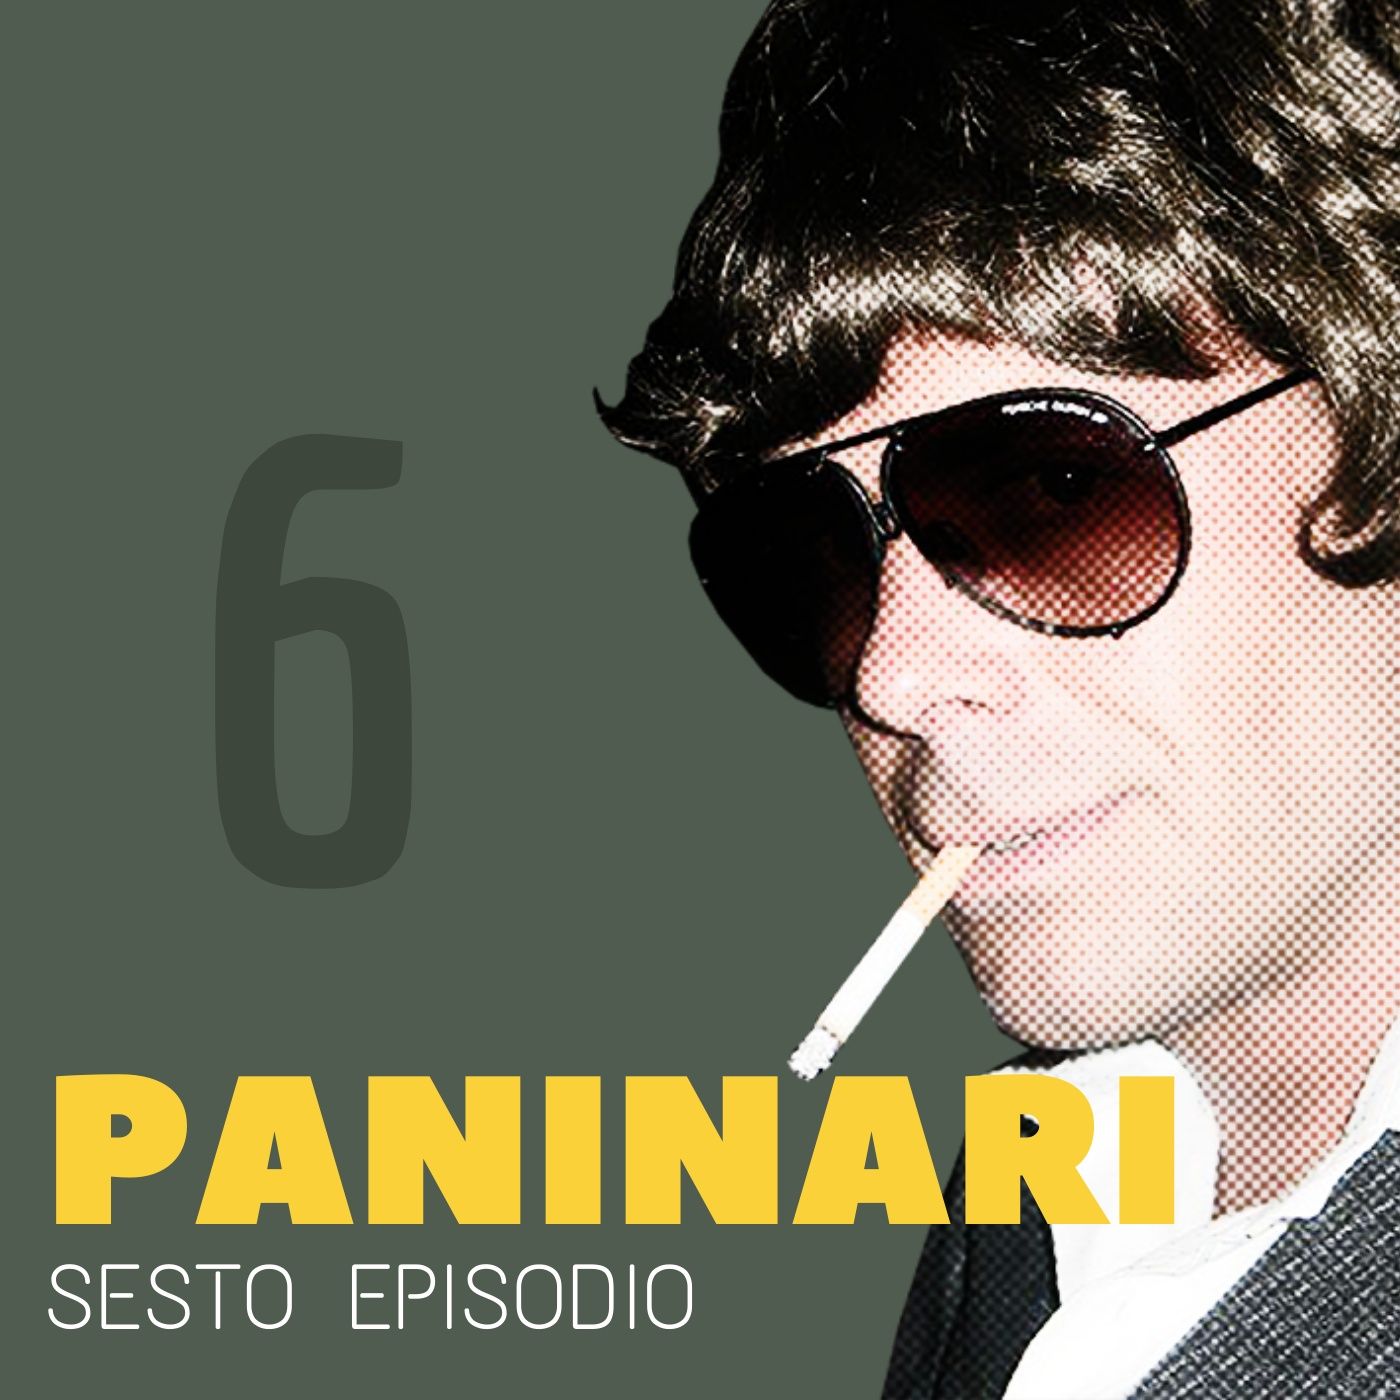 06. Il Paninaro non di Milano